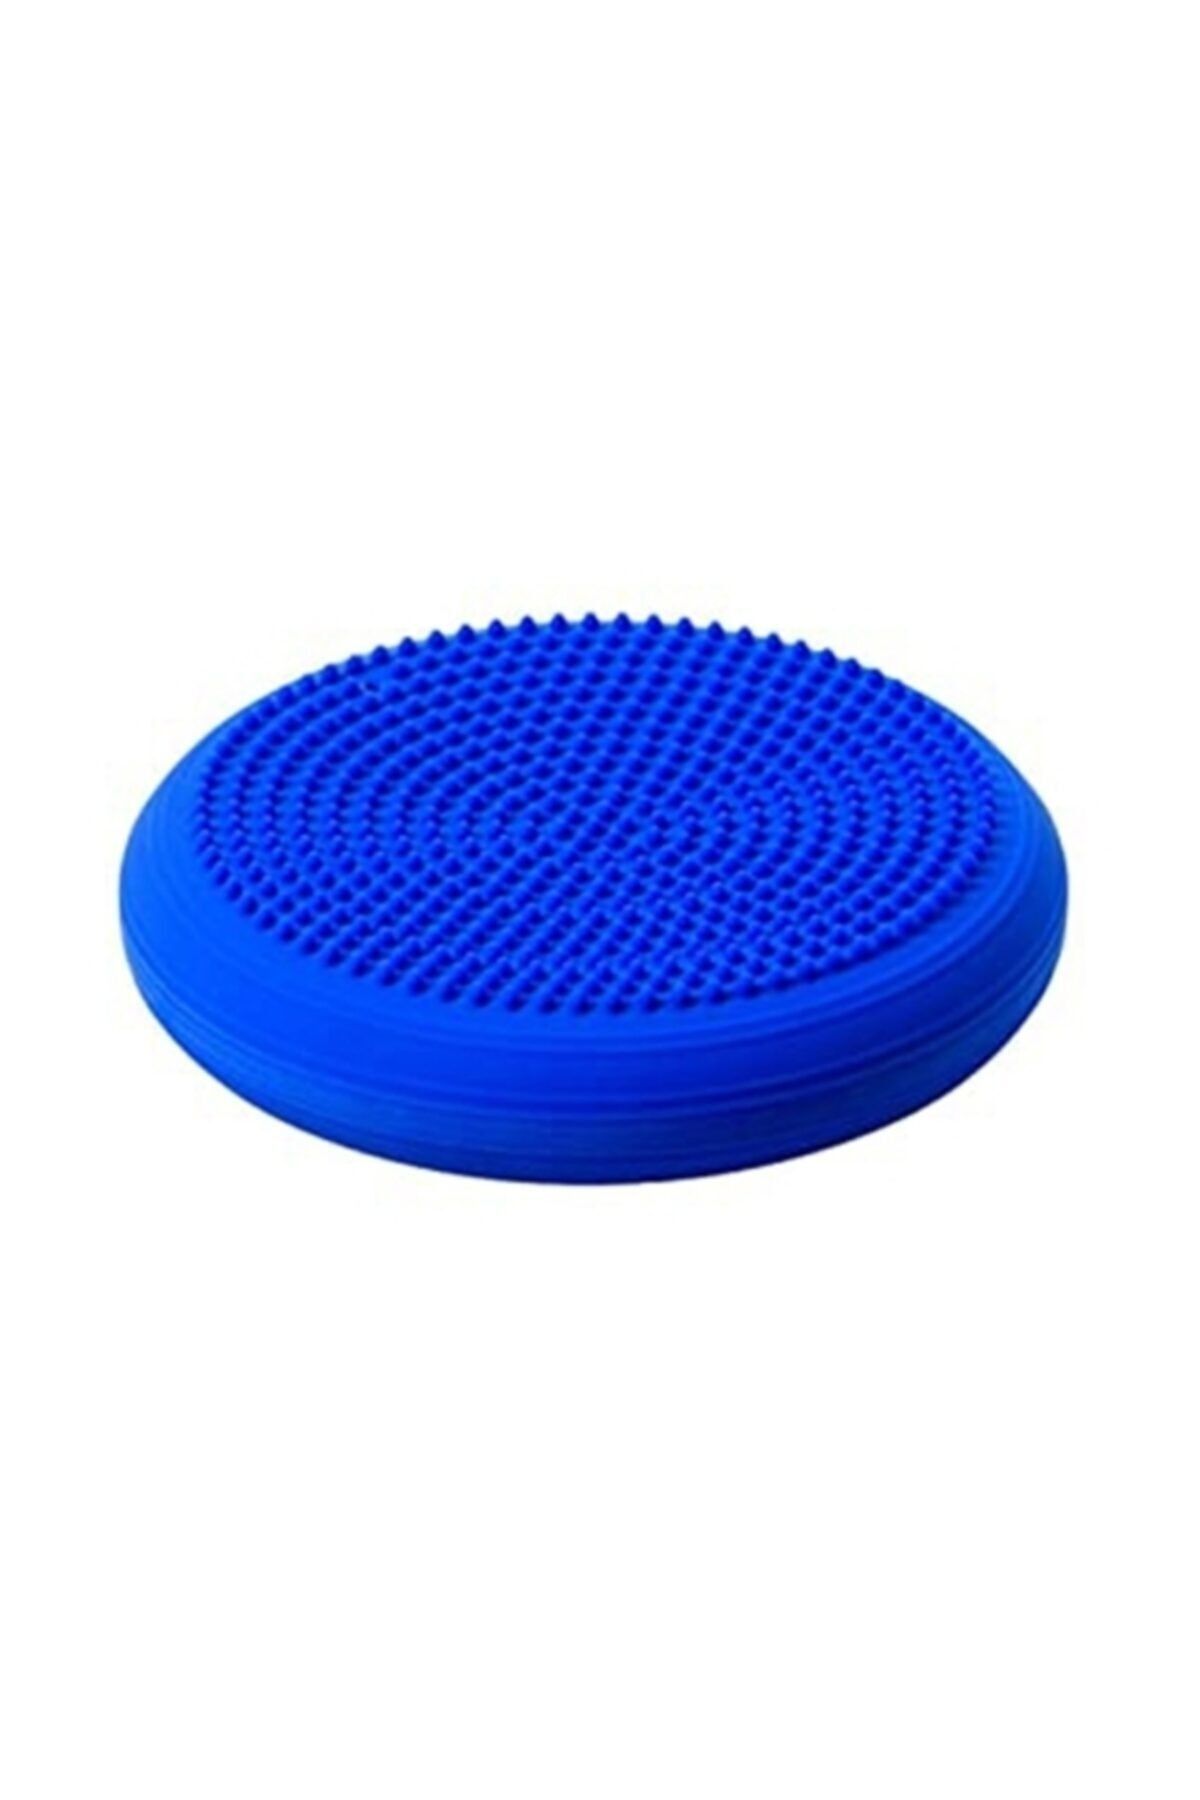 Theraband ® Ball Cushion Senso Mavi 36 Cm